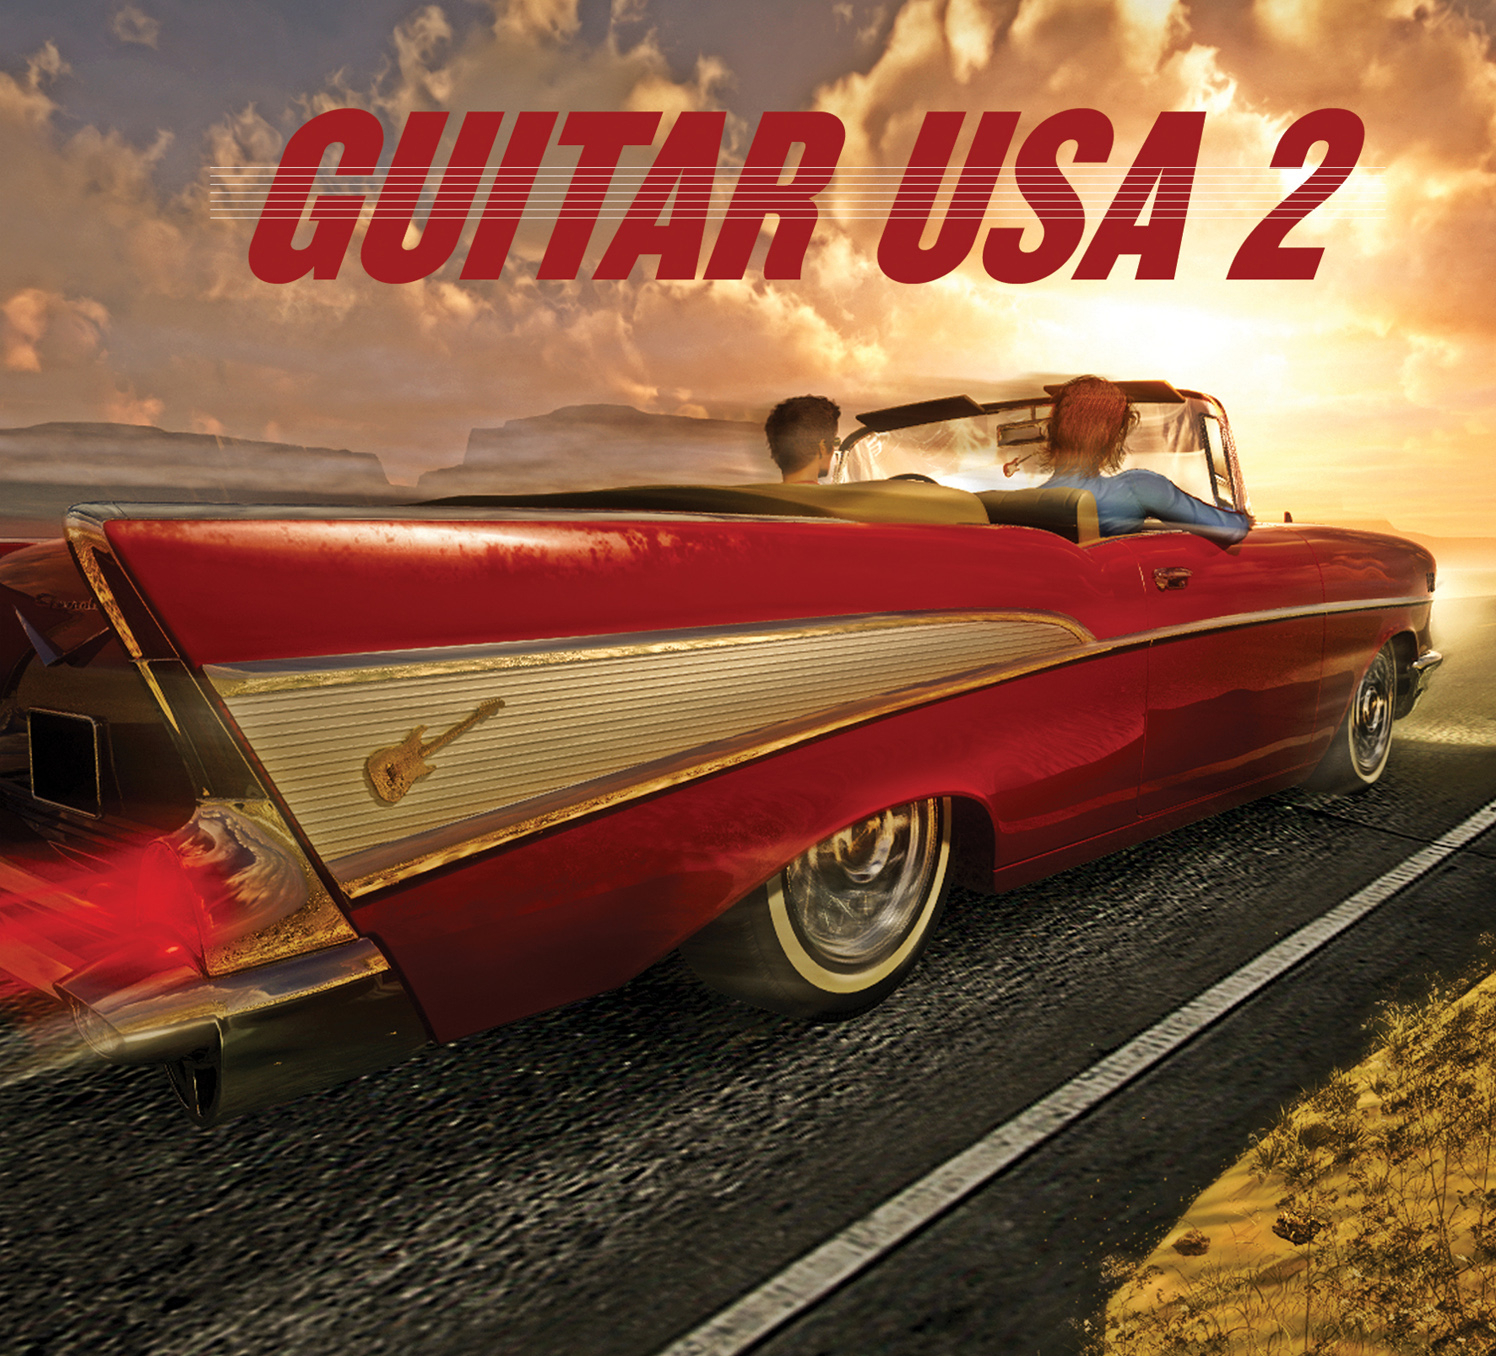 Guitar USA 2